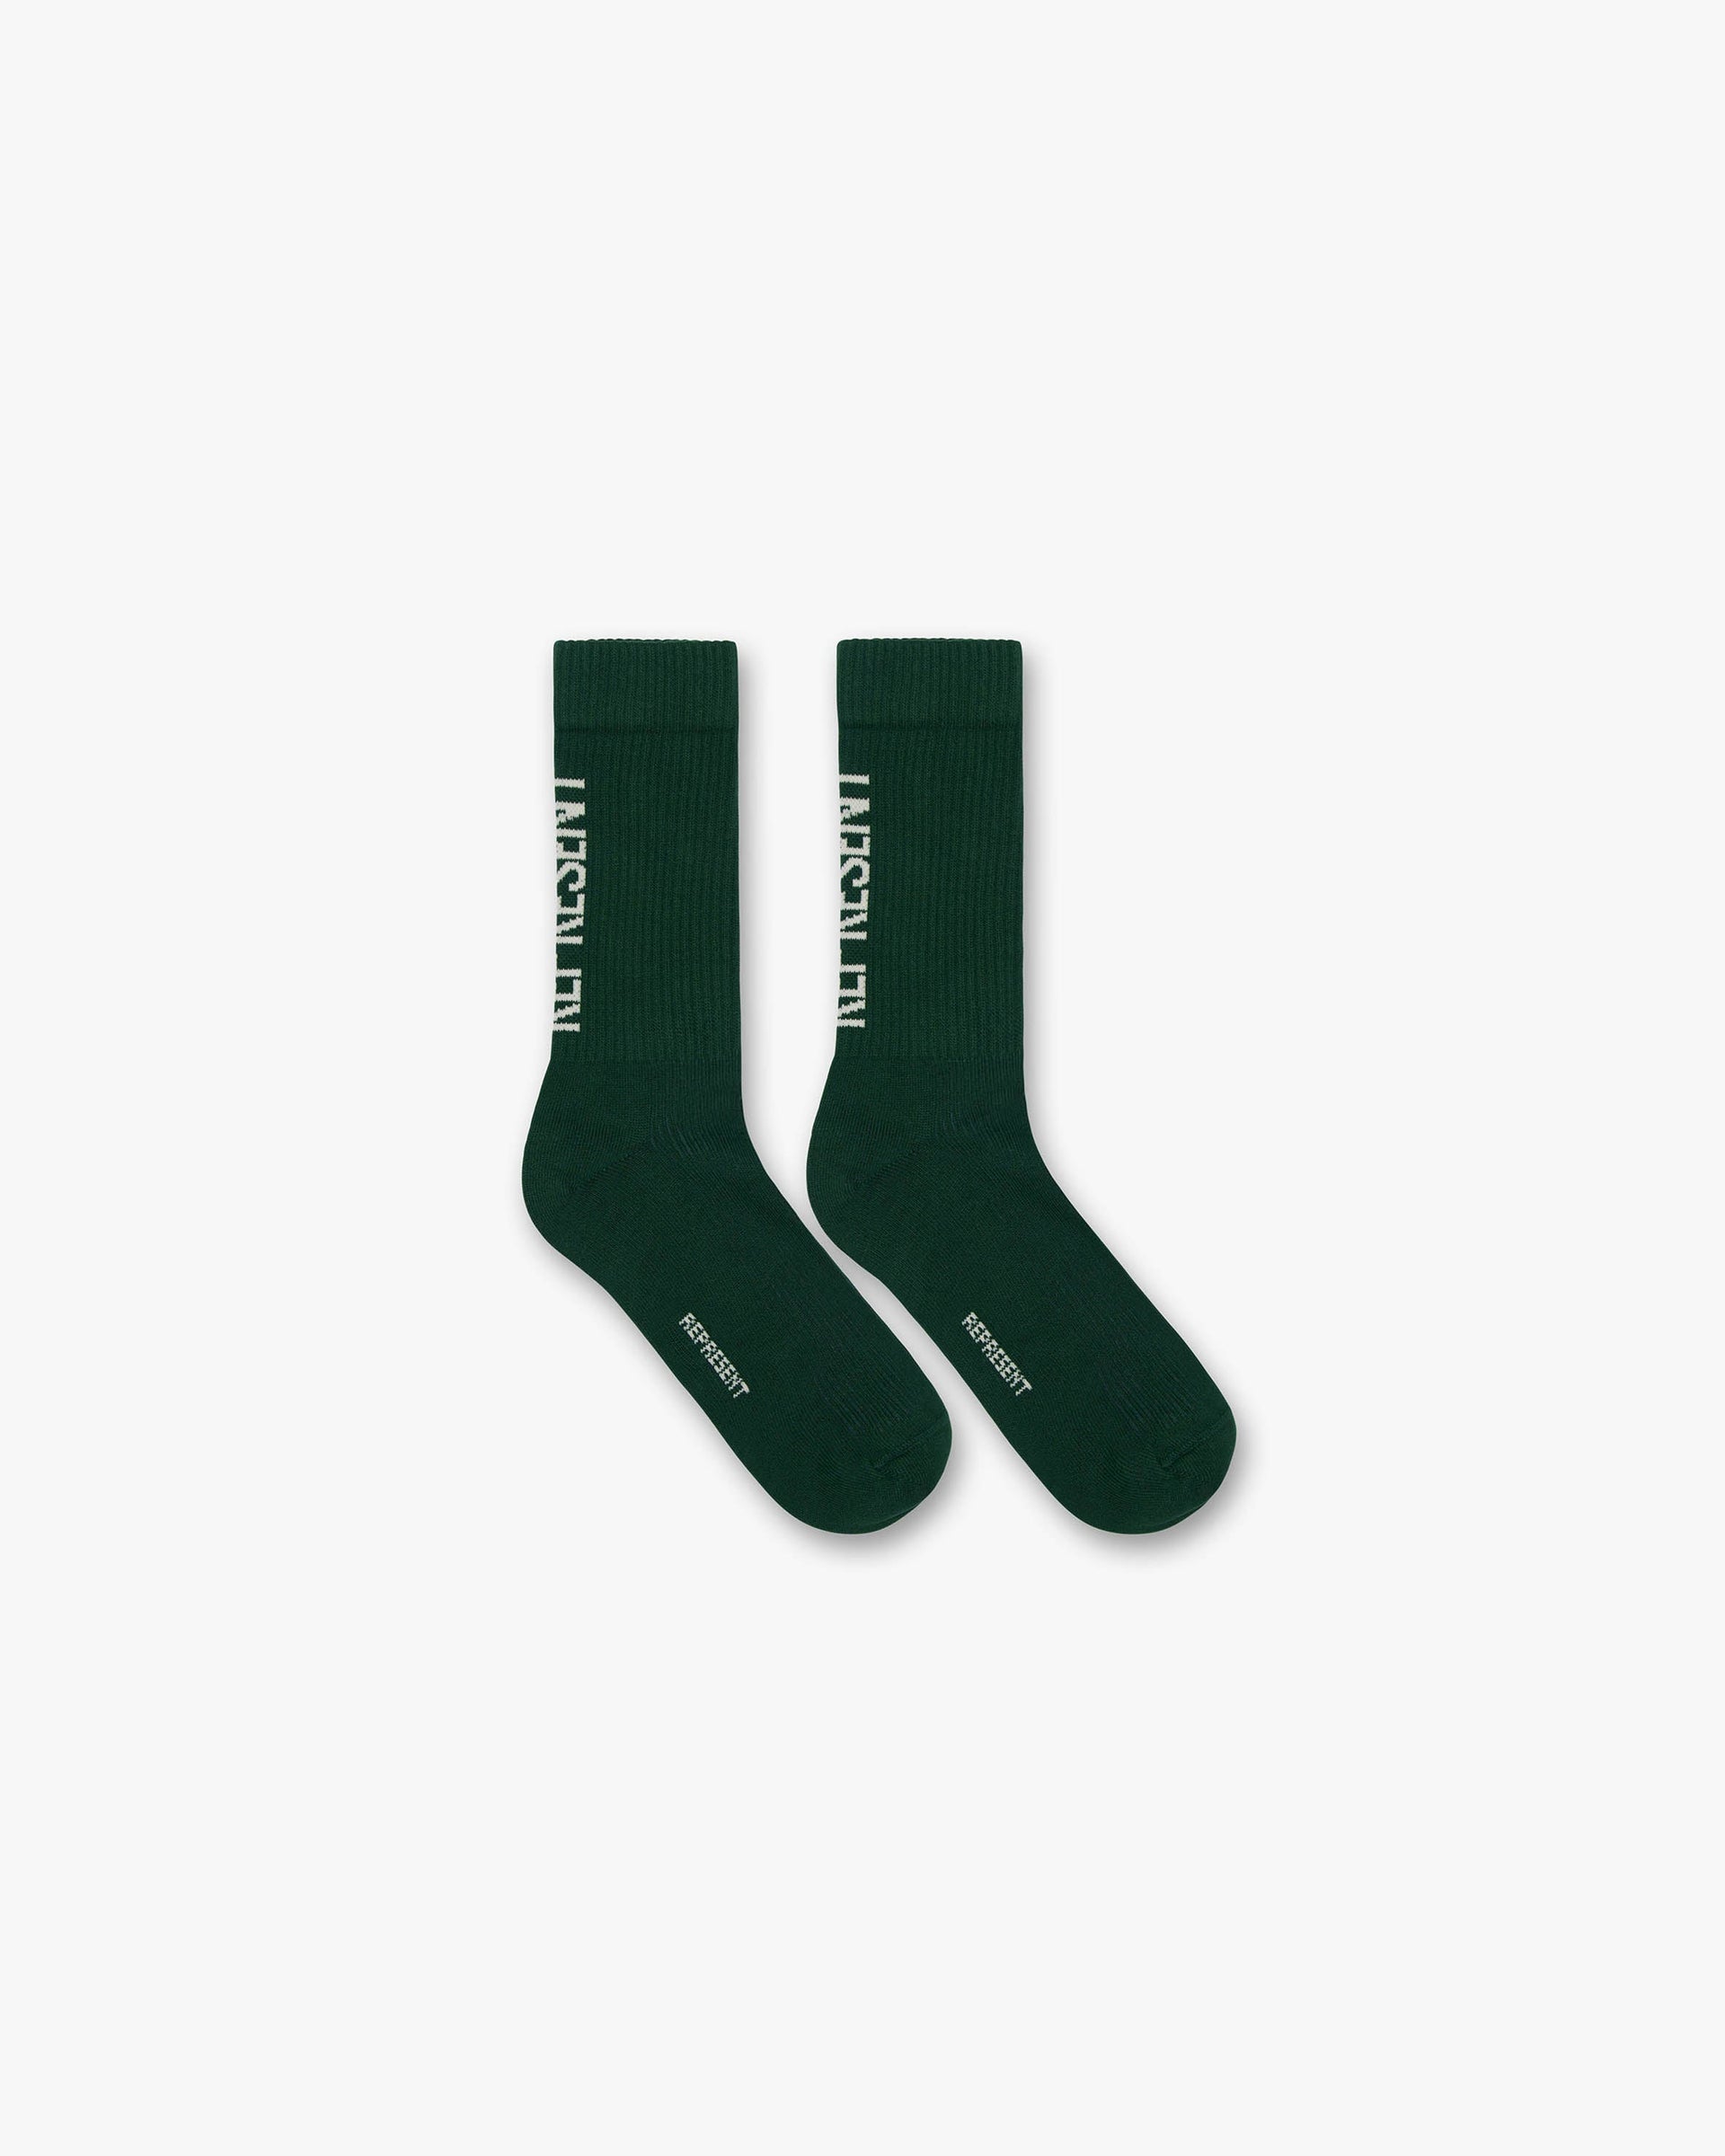 Represent Socks | Racing Green Accessories FW22 | Represent Clo